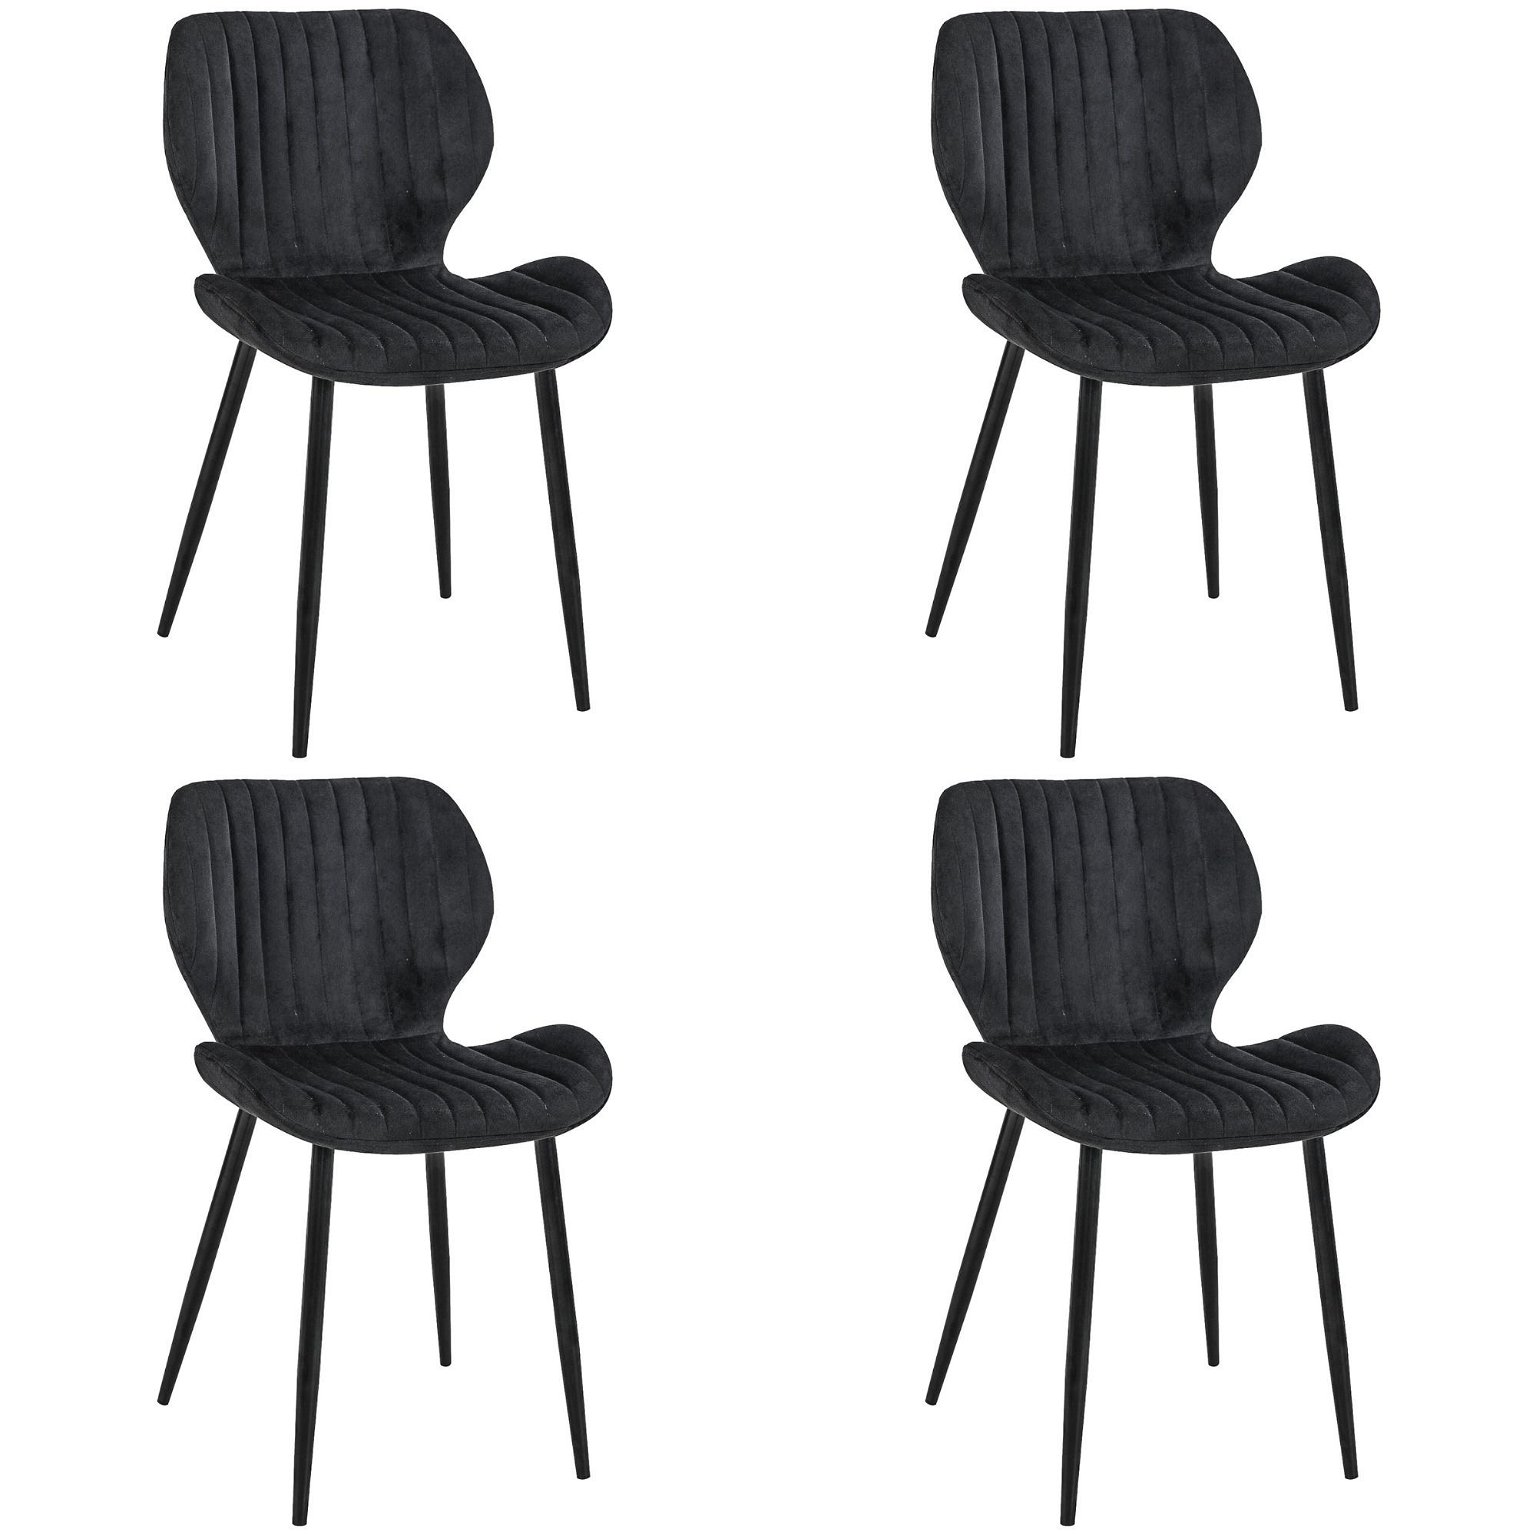 4-ių kėdžių komplektas SJ.17, juoda